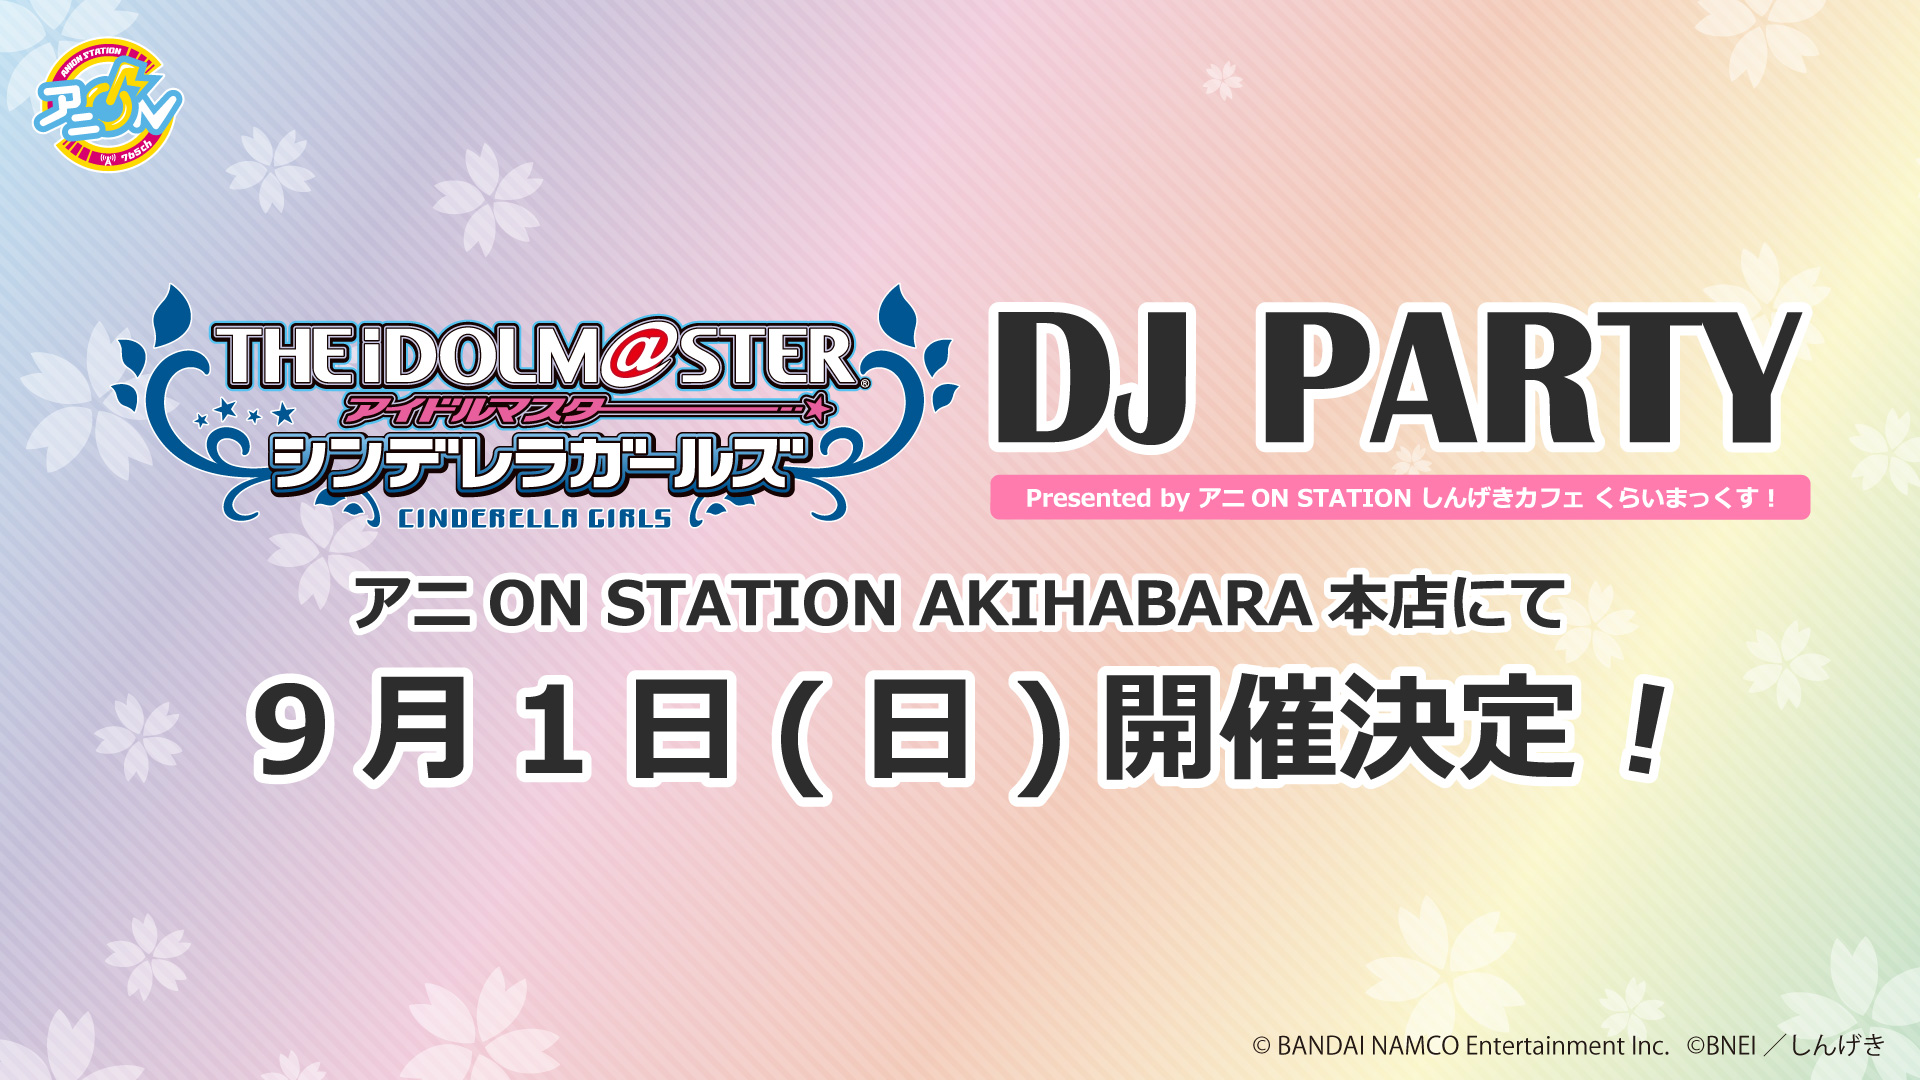 アイドルマスター シンデレラガールズ  DJ PARTY Presented byアニON STATIONしんげきカフェ くらいまっくす！